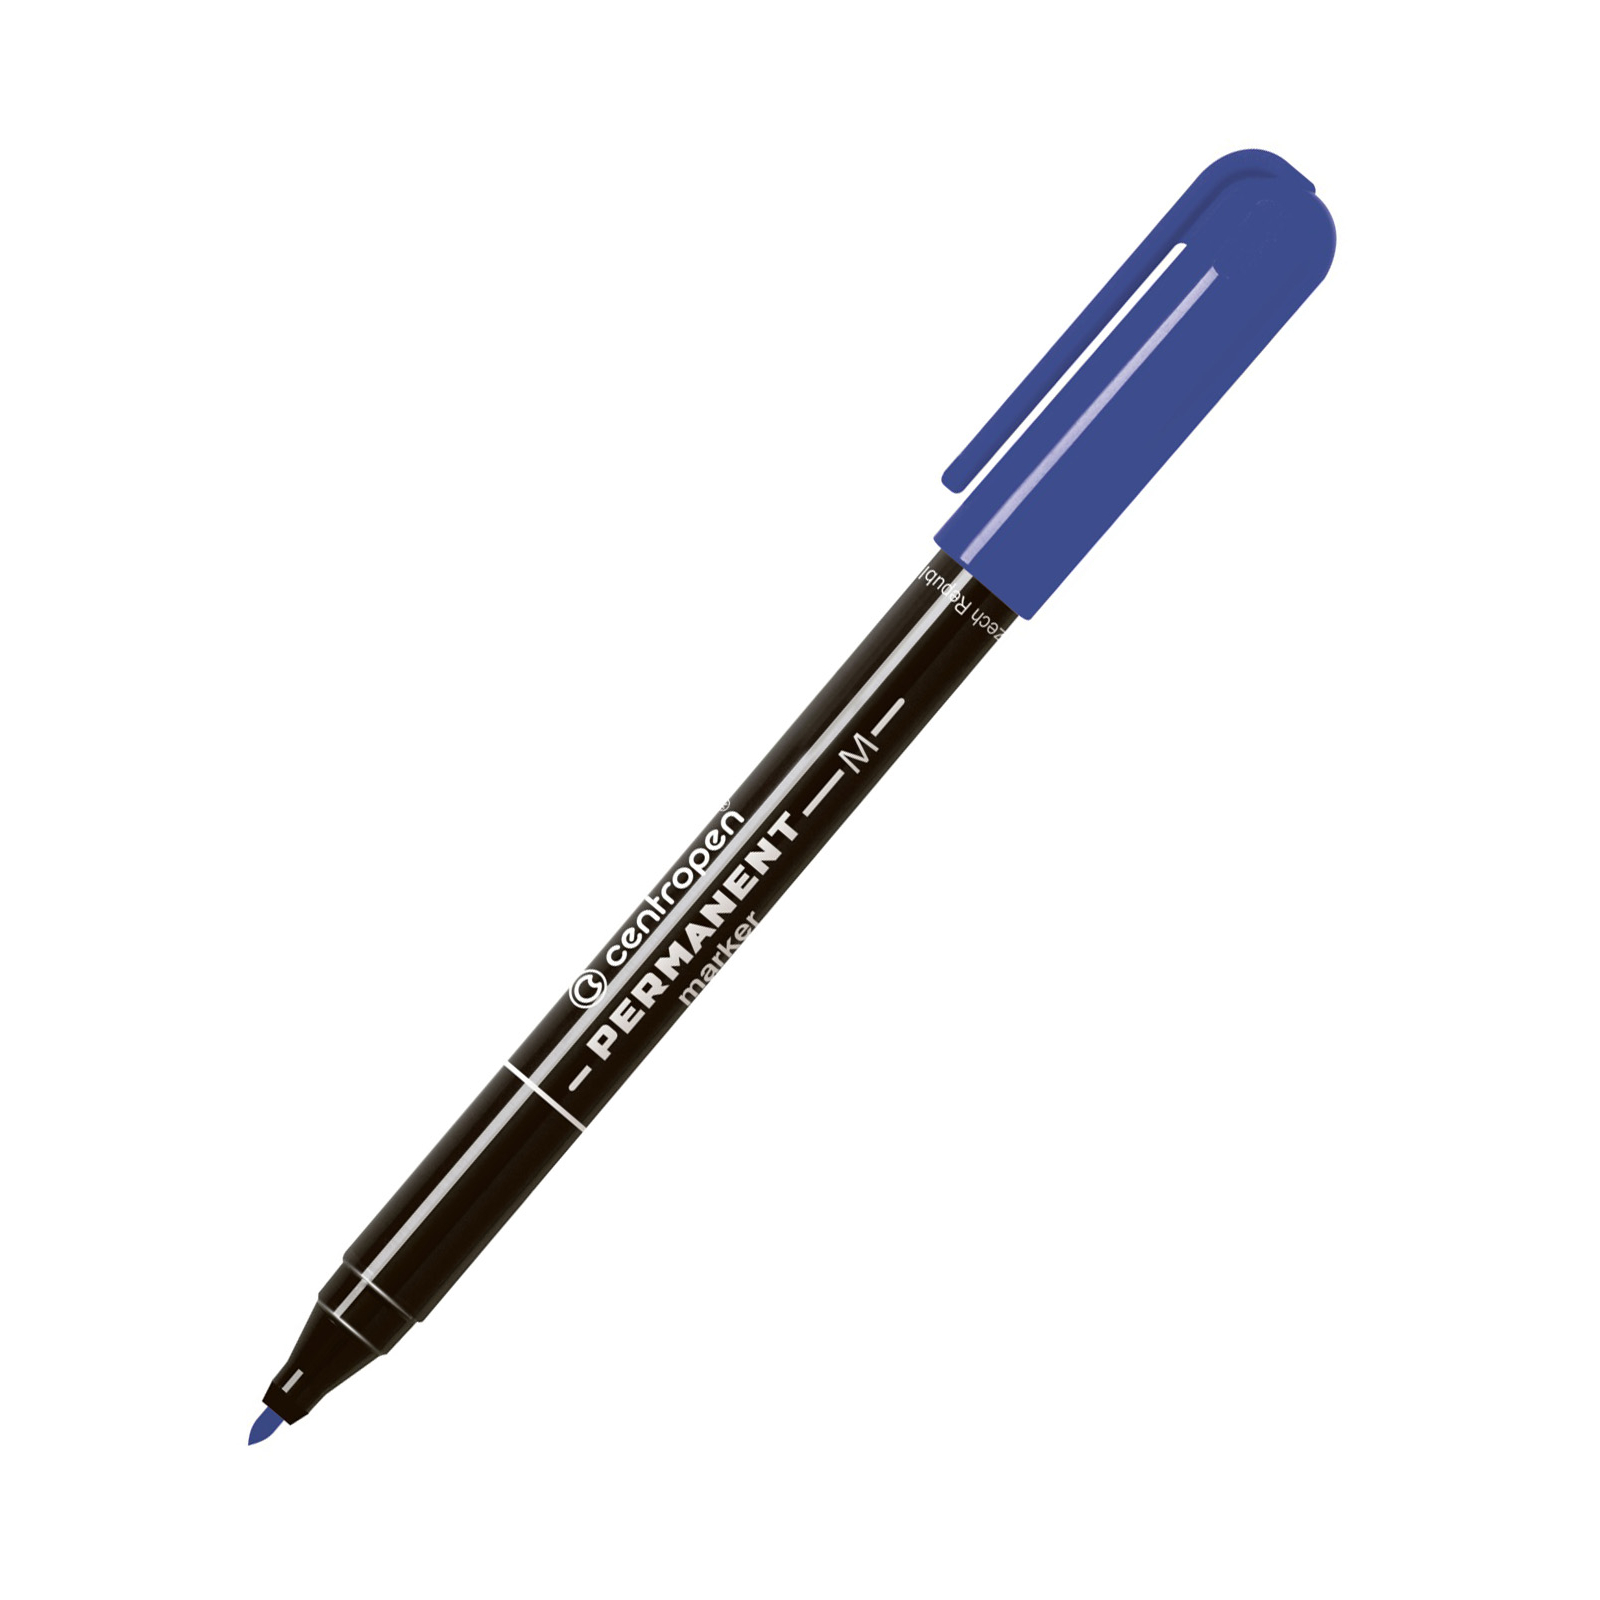 Маркер Centropen Permanent 2846 1 мм blue (2846/03)